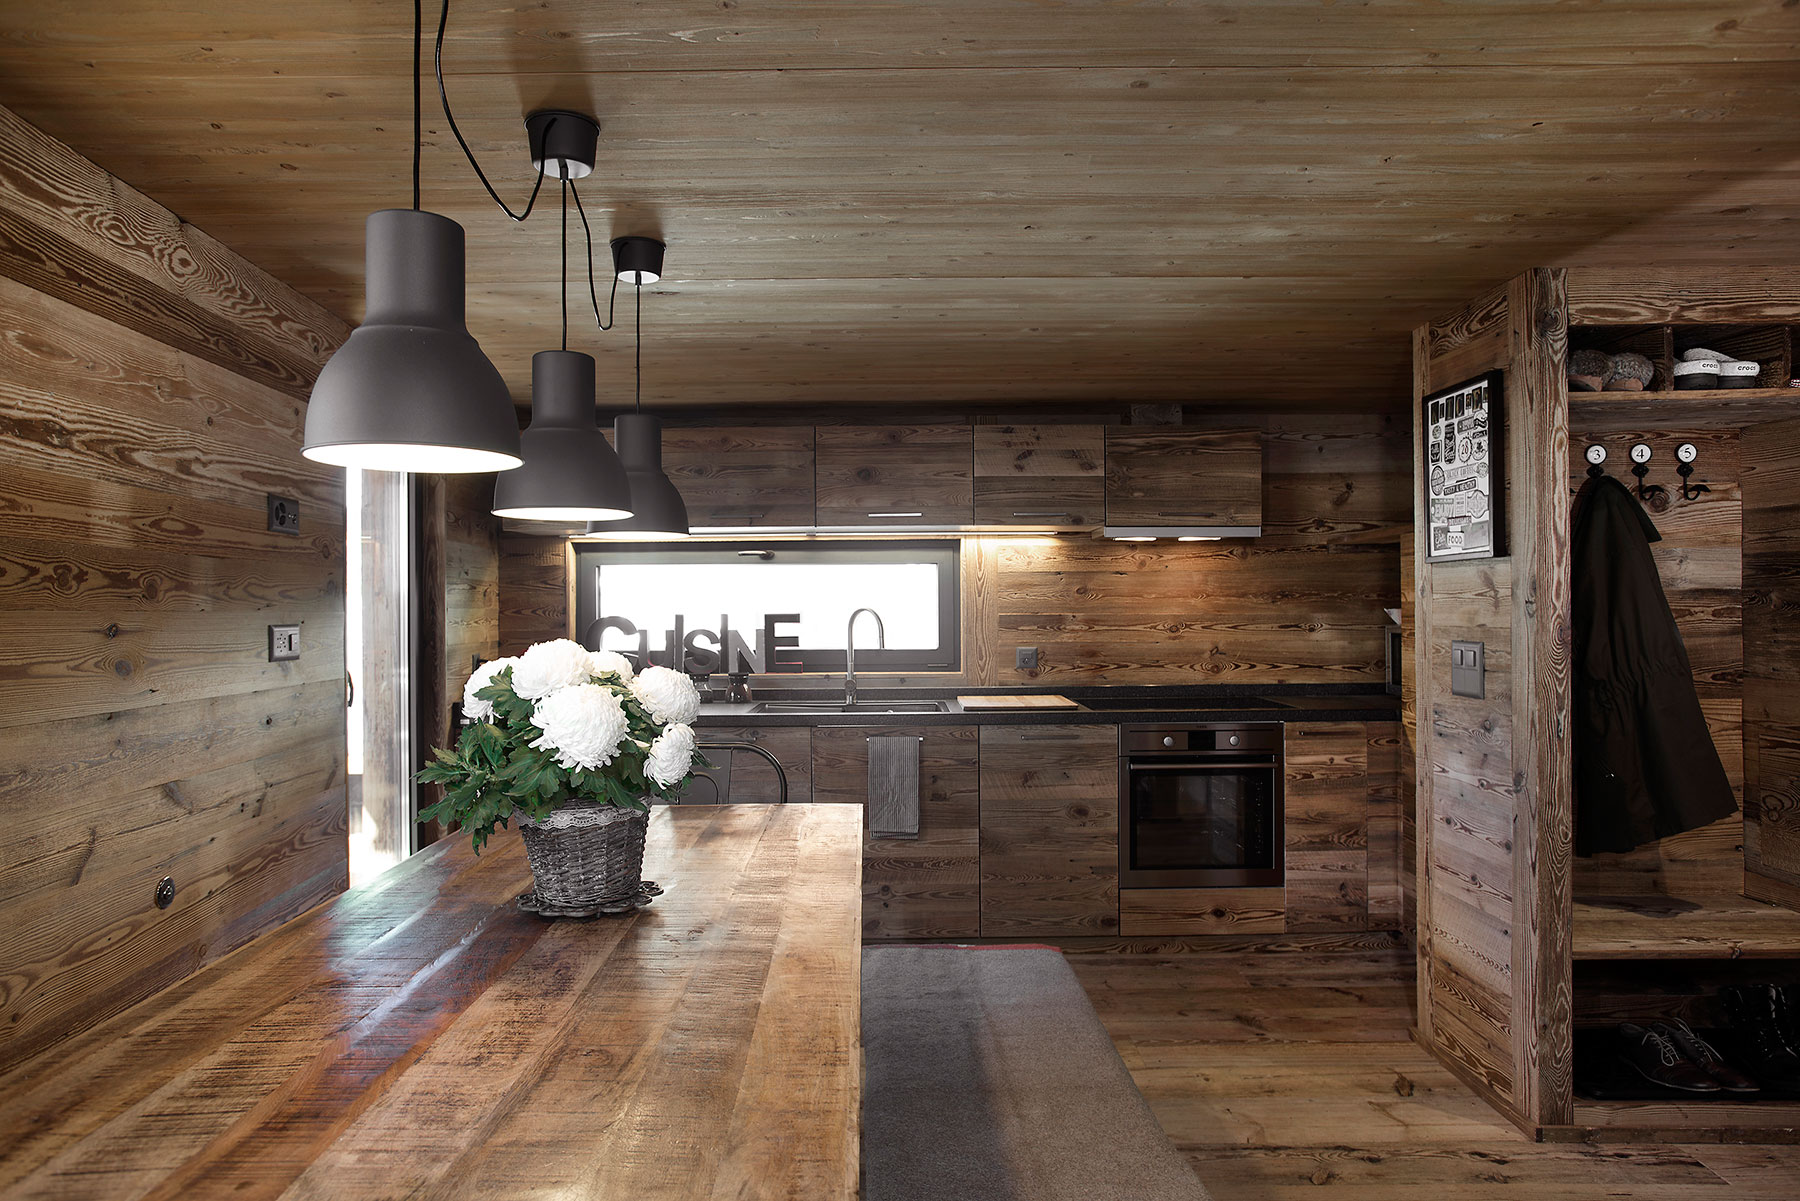 Interiéru tak ako exteriéru dominuje drevo. Pôsobí veľmi teplo a zjednocujúco. Interiér kuchyne s jedálňou.